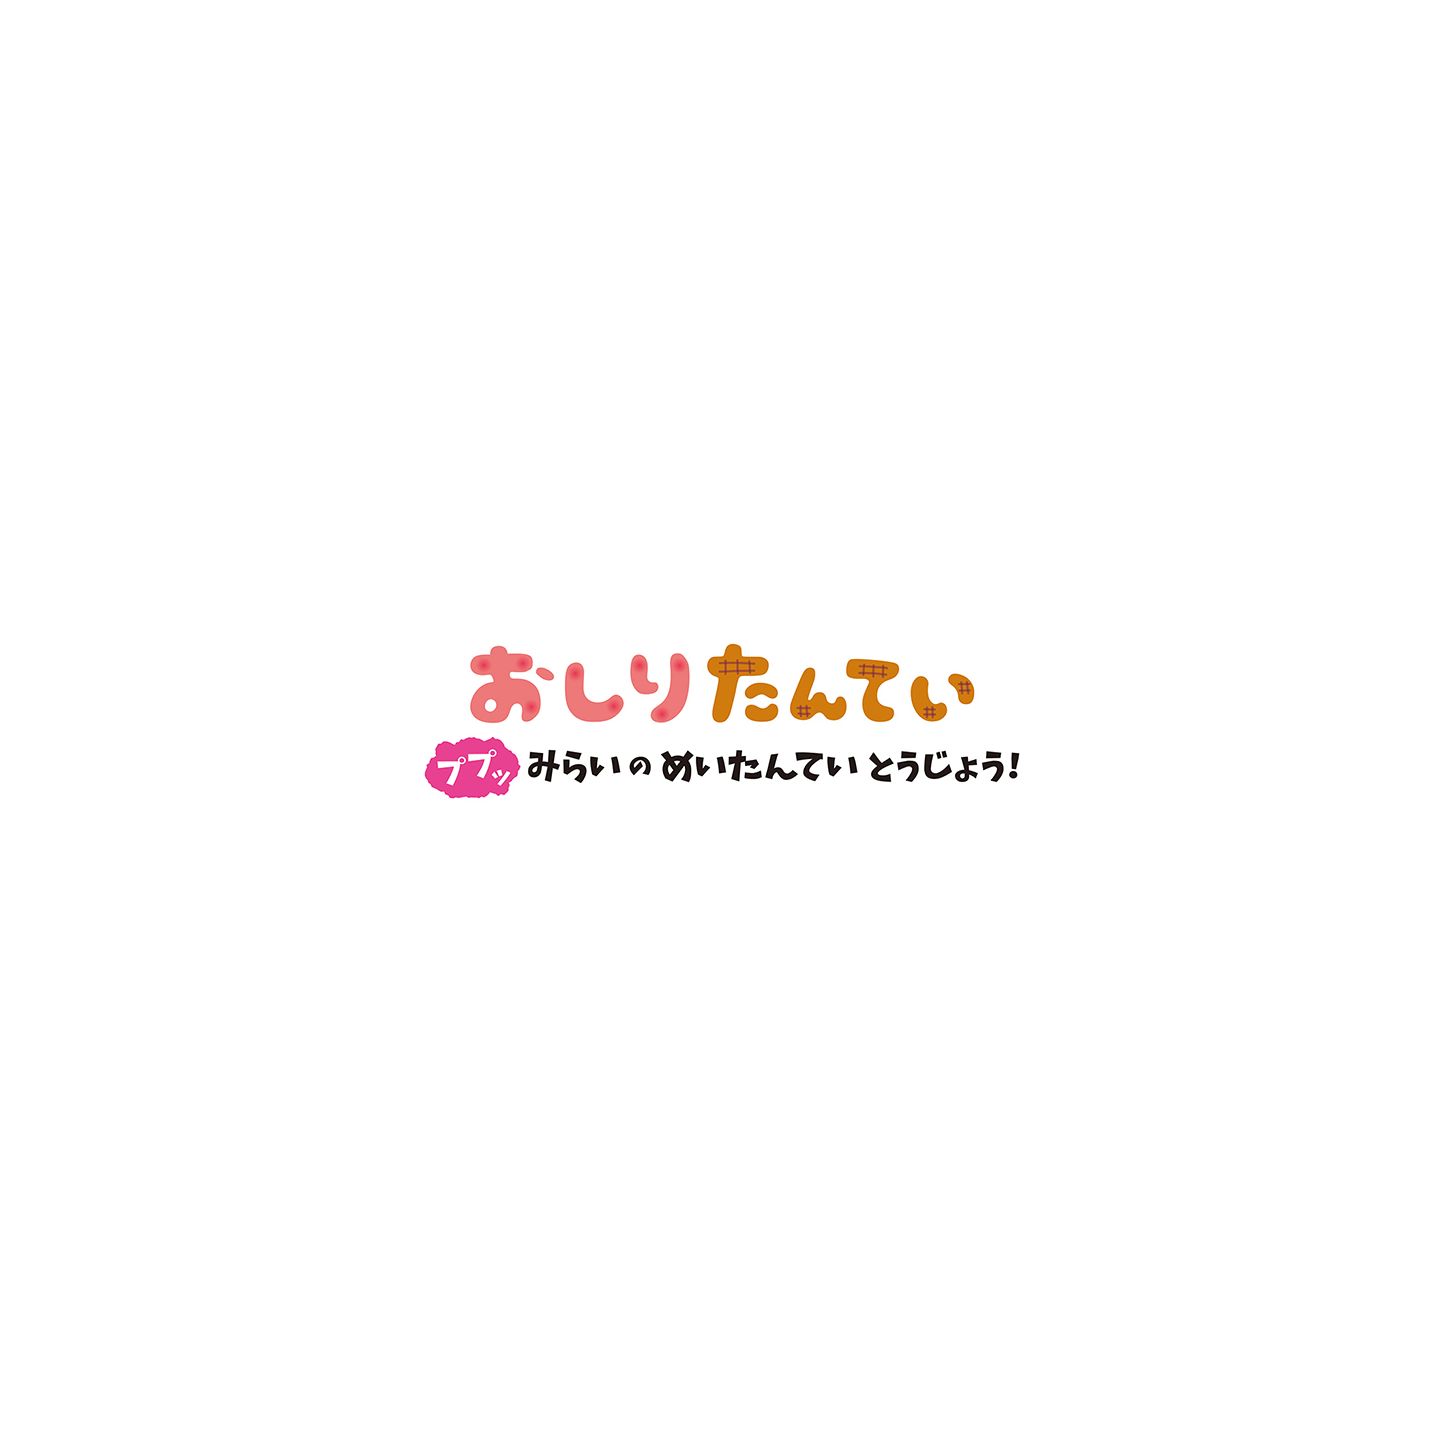 Oshiri Tantei: Pupu Mirai no Meitantei Toujou! annunciato per Switch